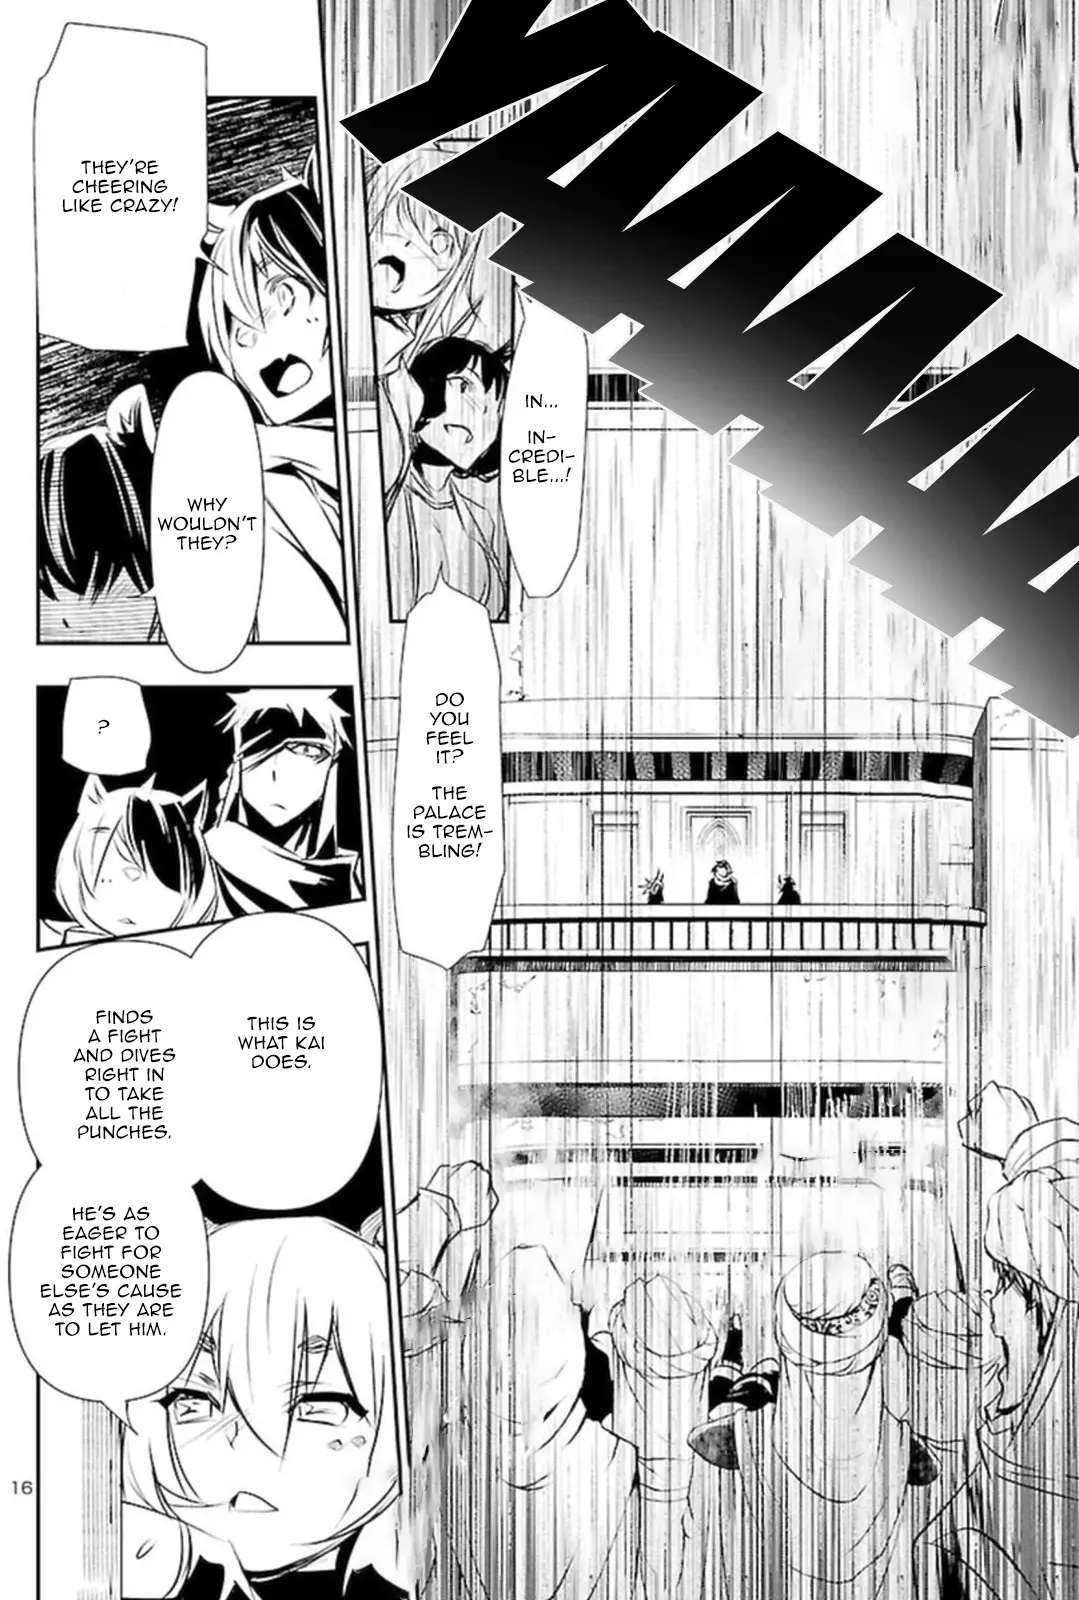 Shinju no Nectar - 68 page 16-9cff888f